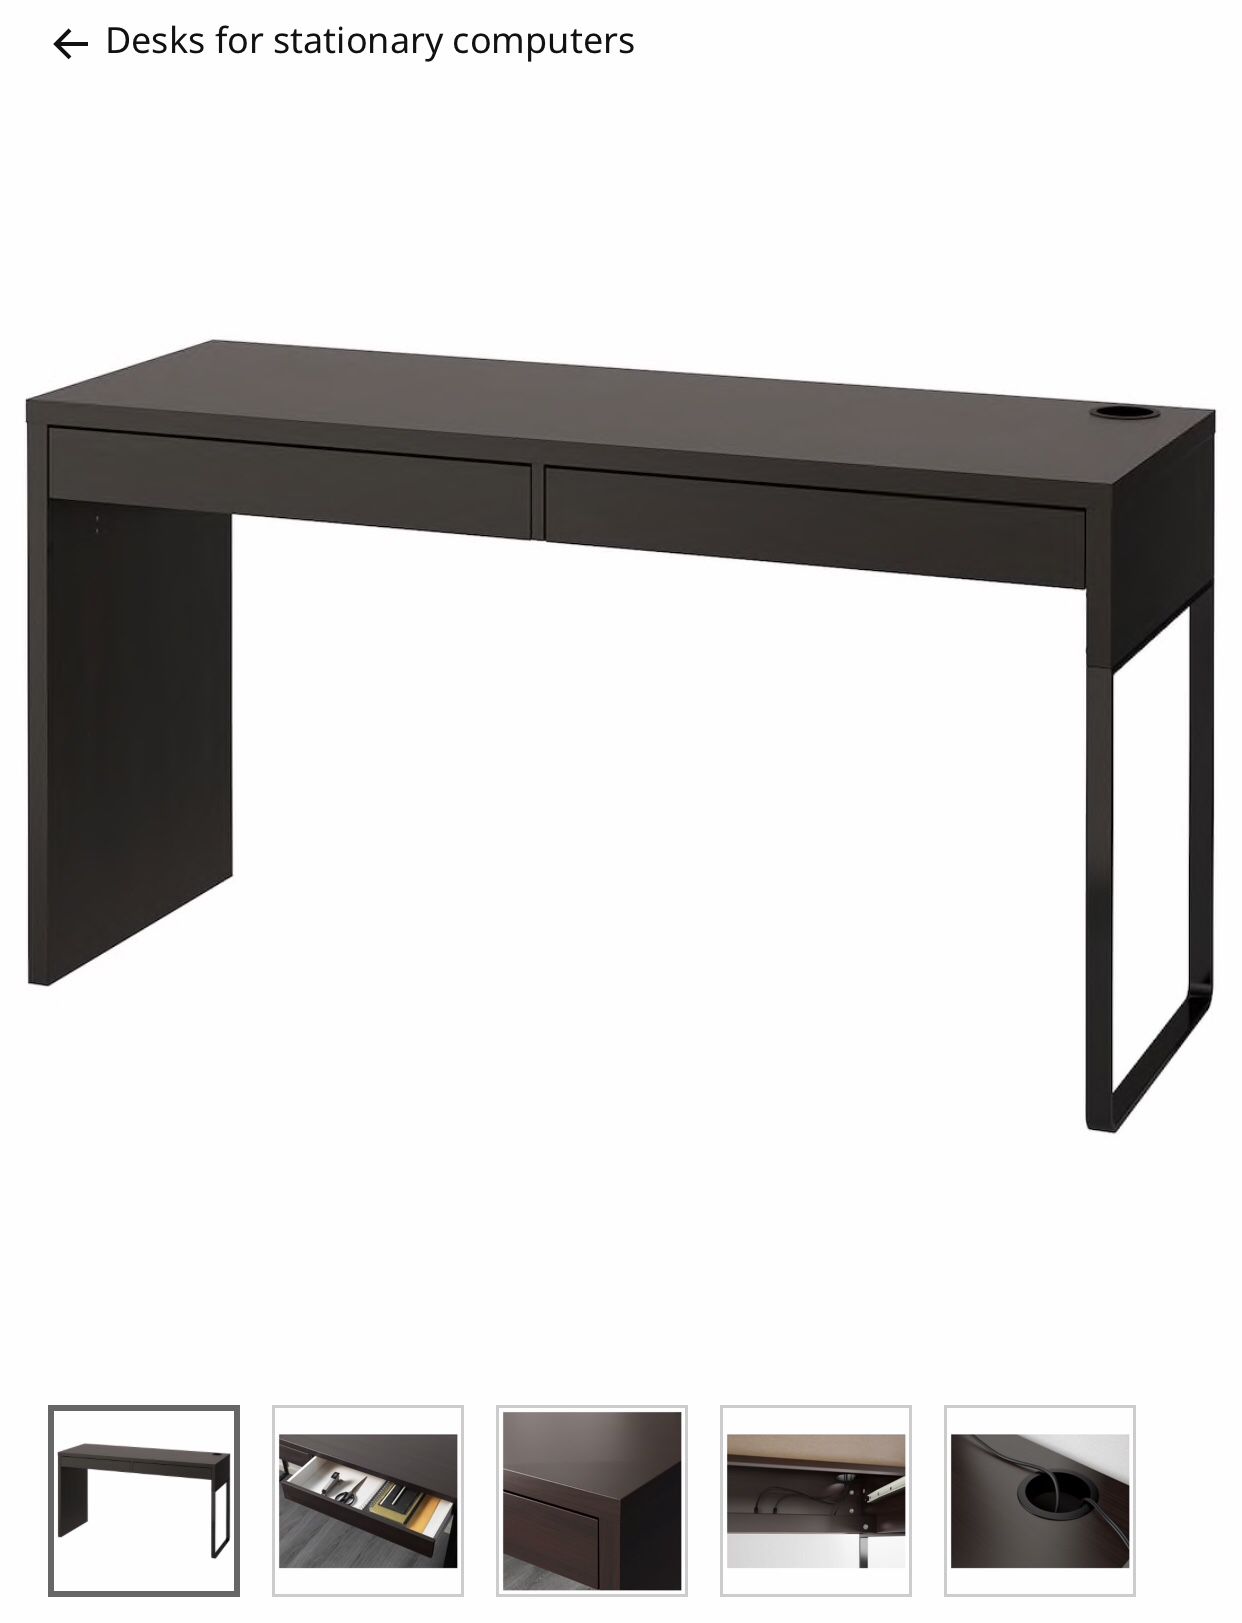 IKEA desk